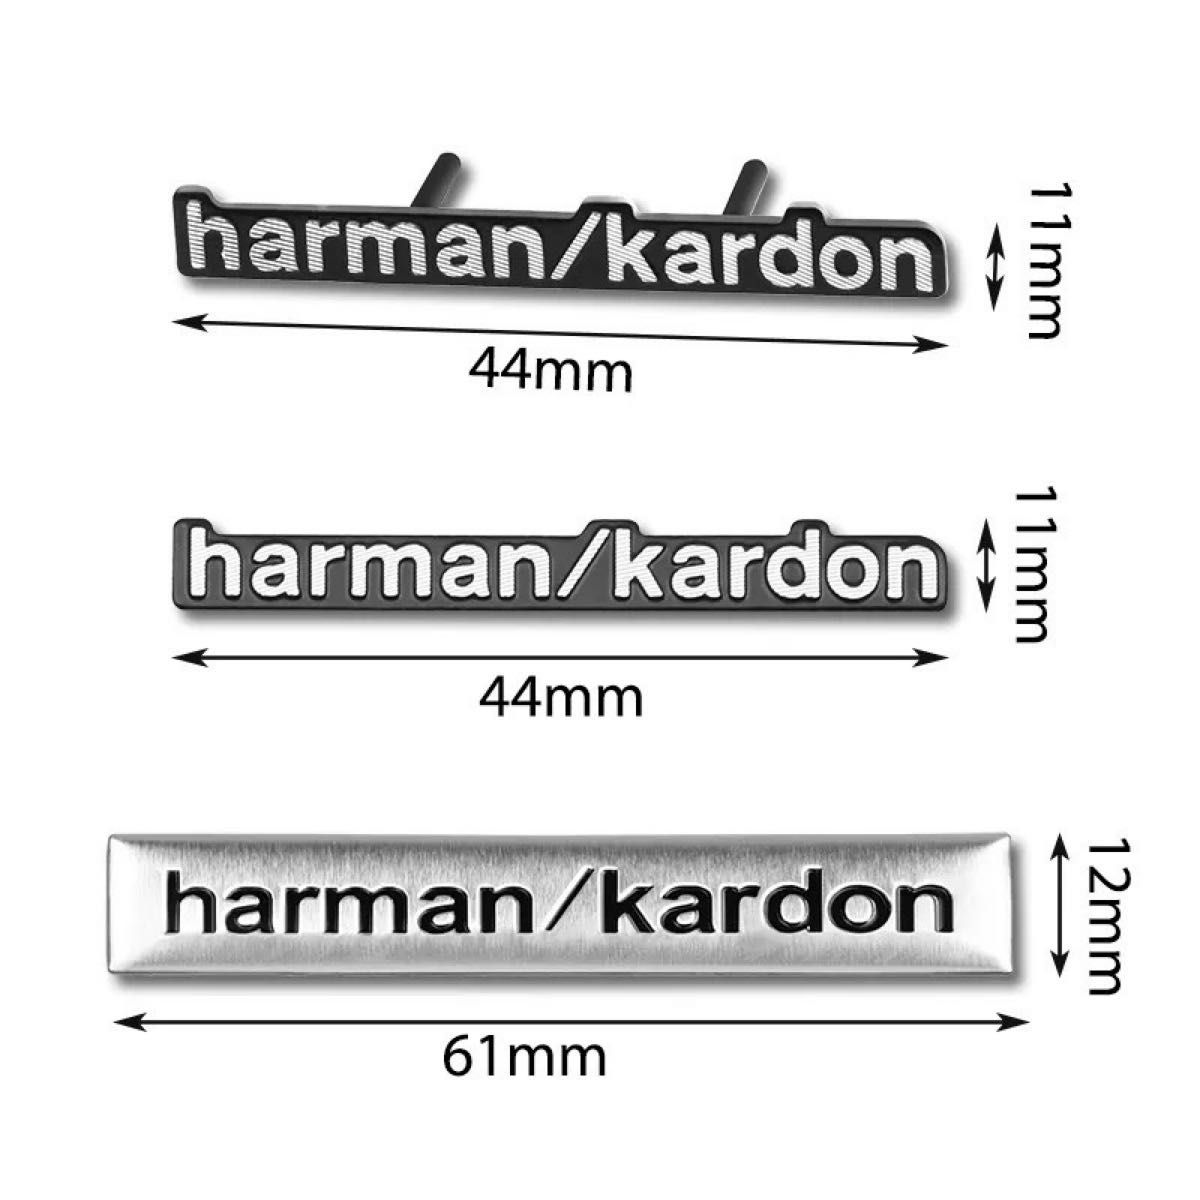 harman/kardon  ステッカー  3D 4個 セット エンブレム ハーマンカードン